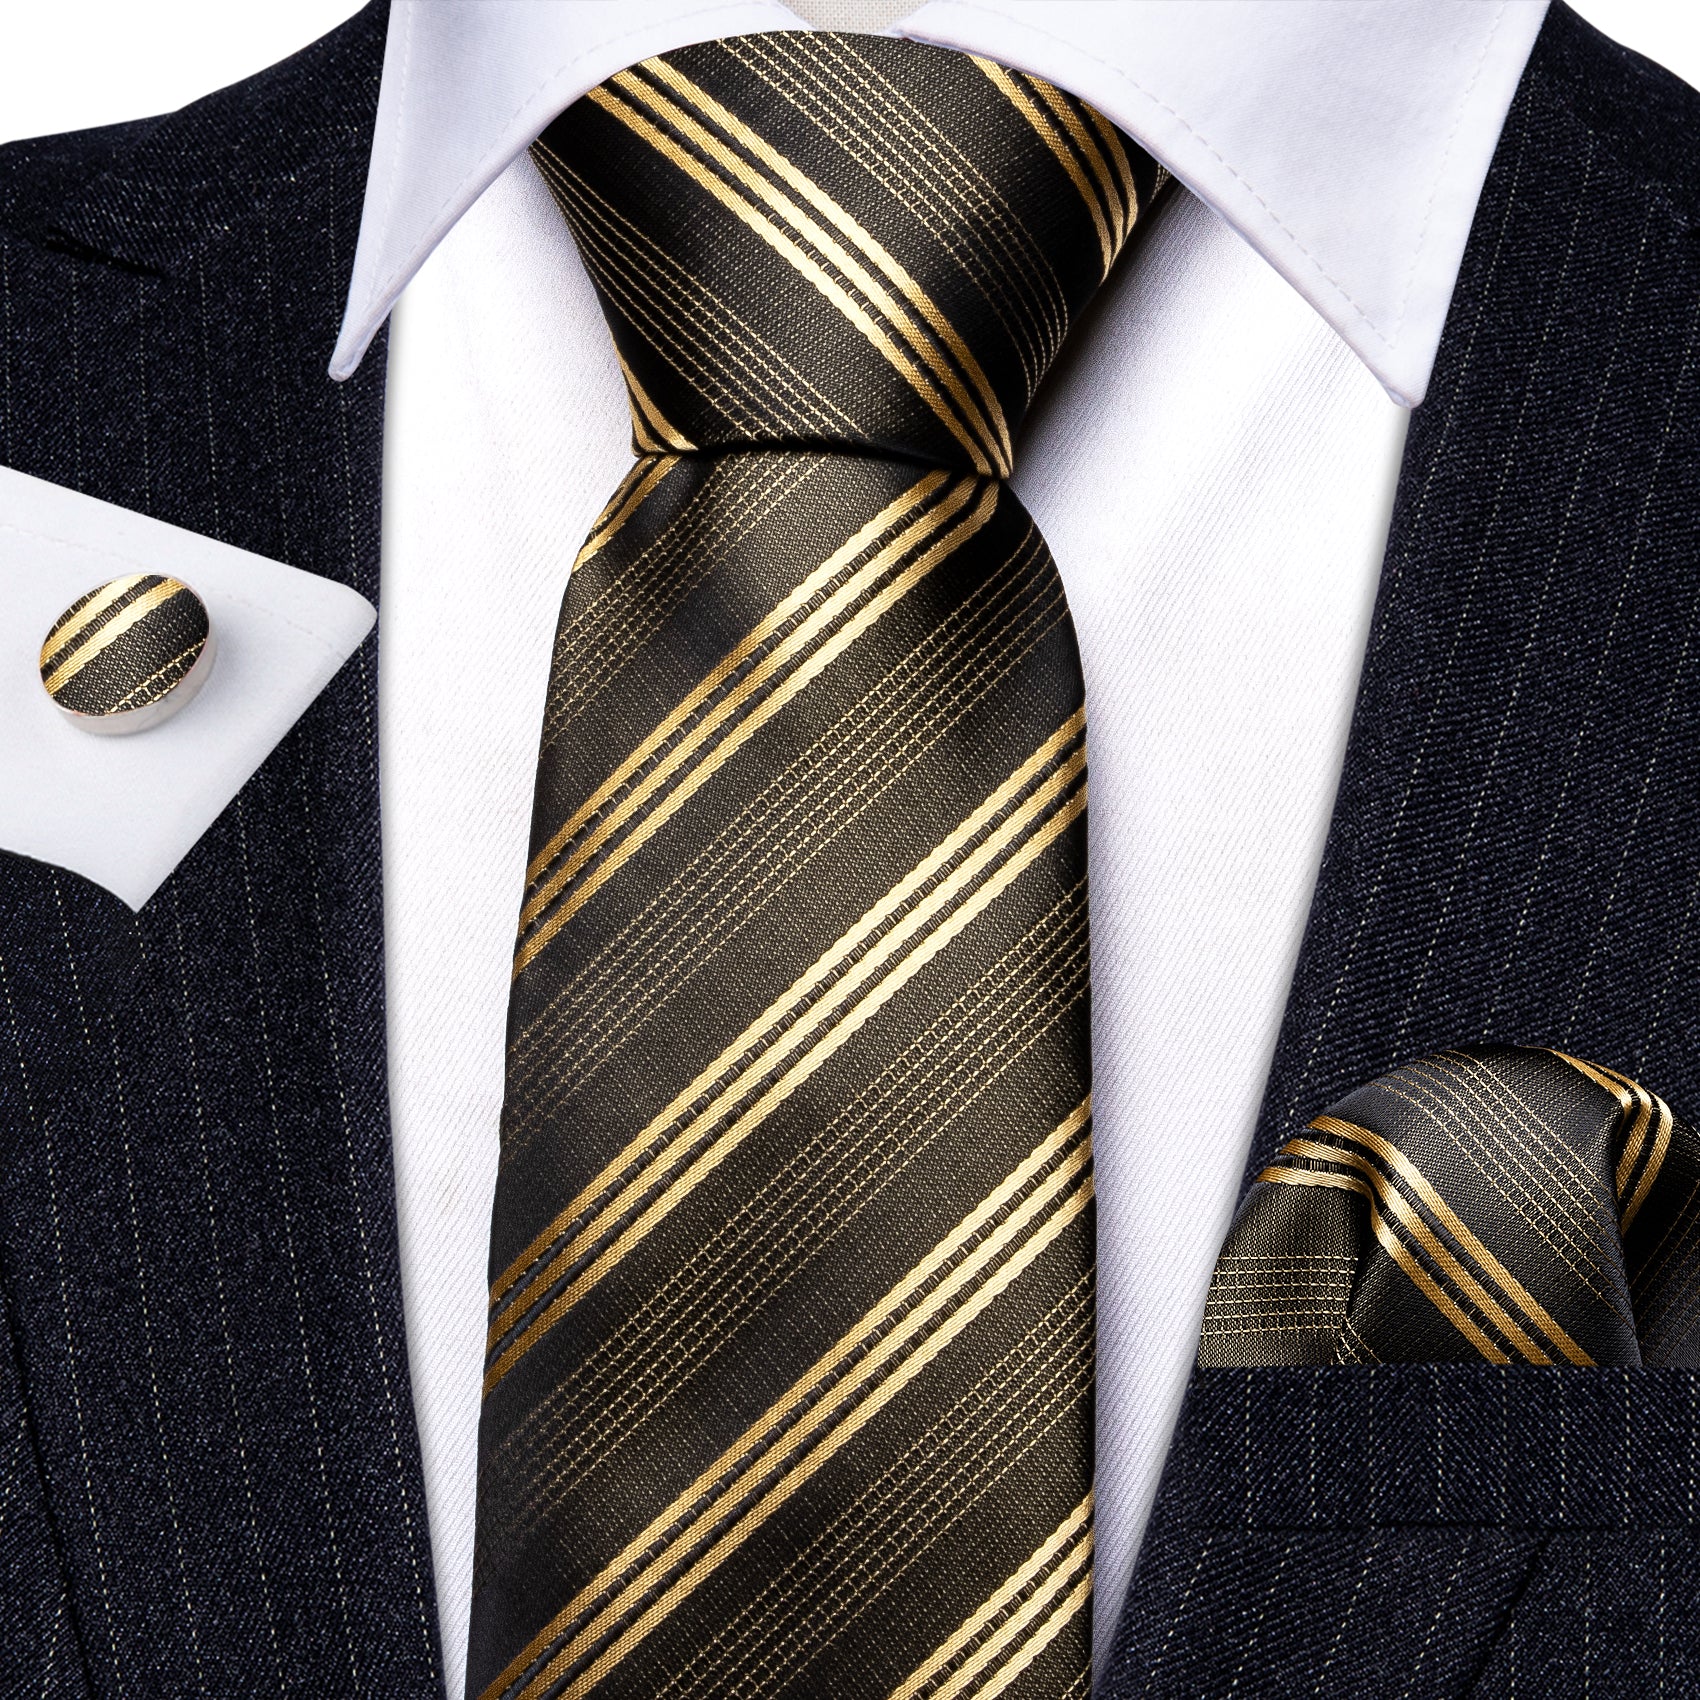 Green Gold Striped Silk Tie Handkerchief Cufflinks Set